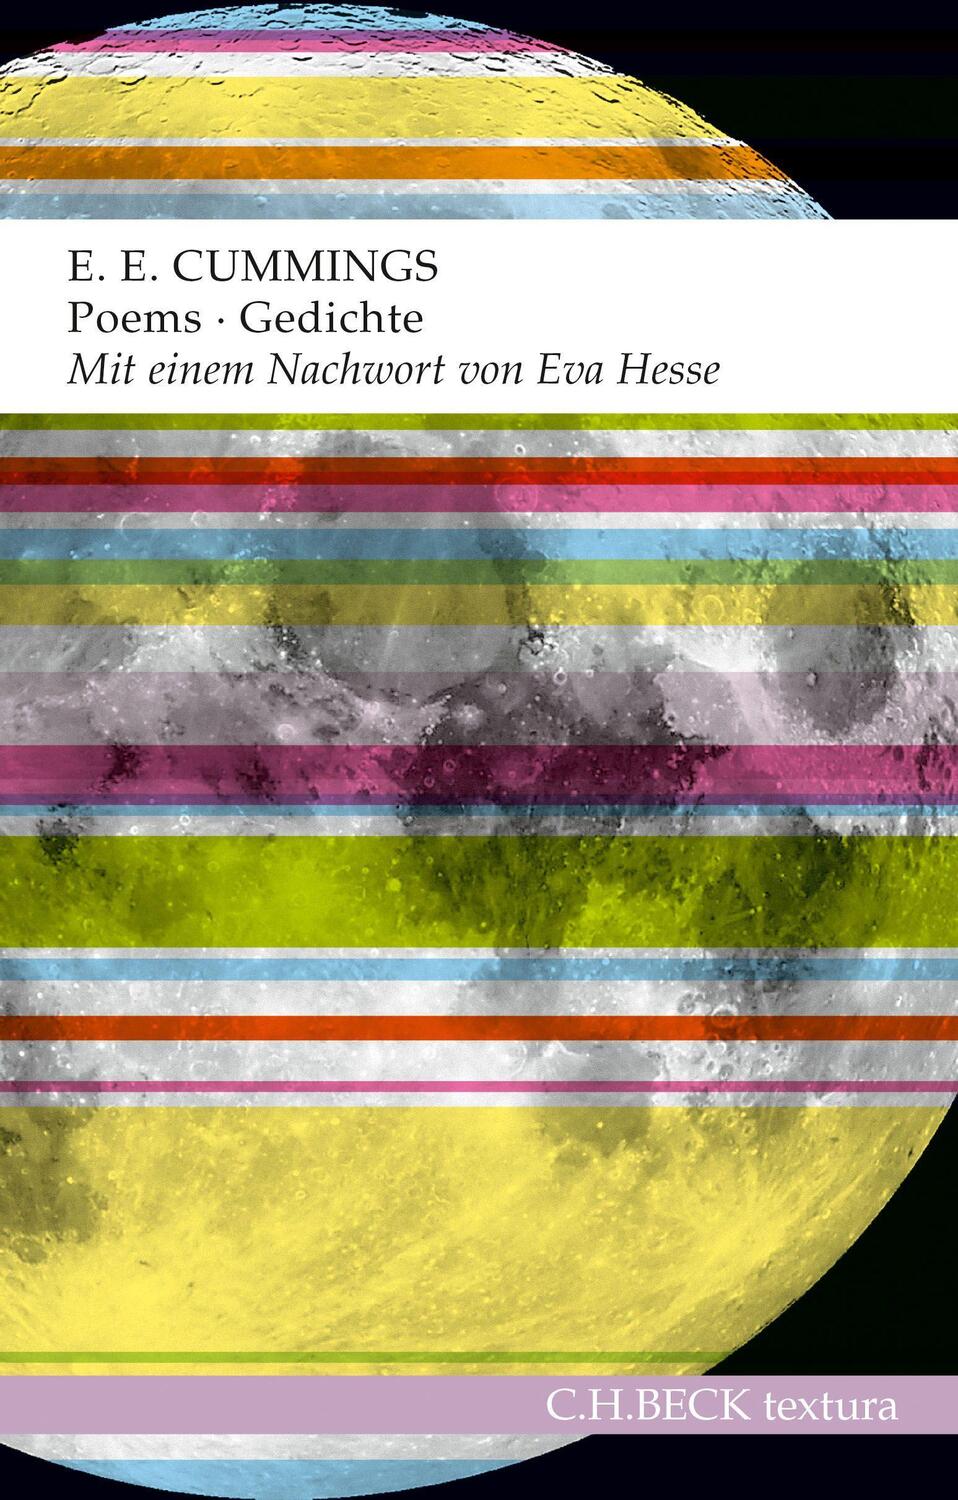 Poems - Gedichte - Cummings, Edward Estlin